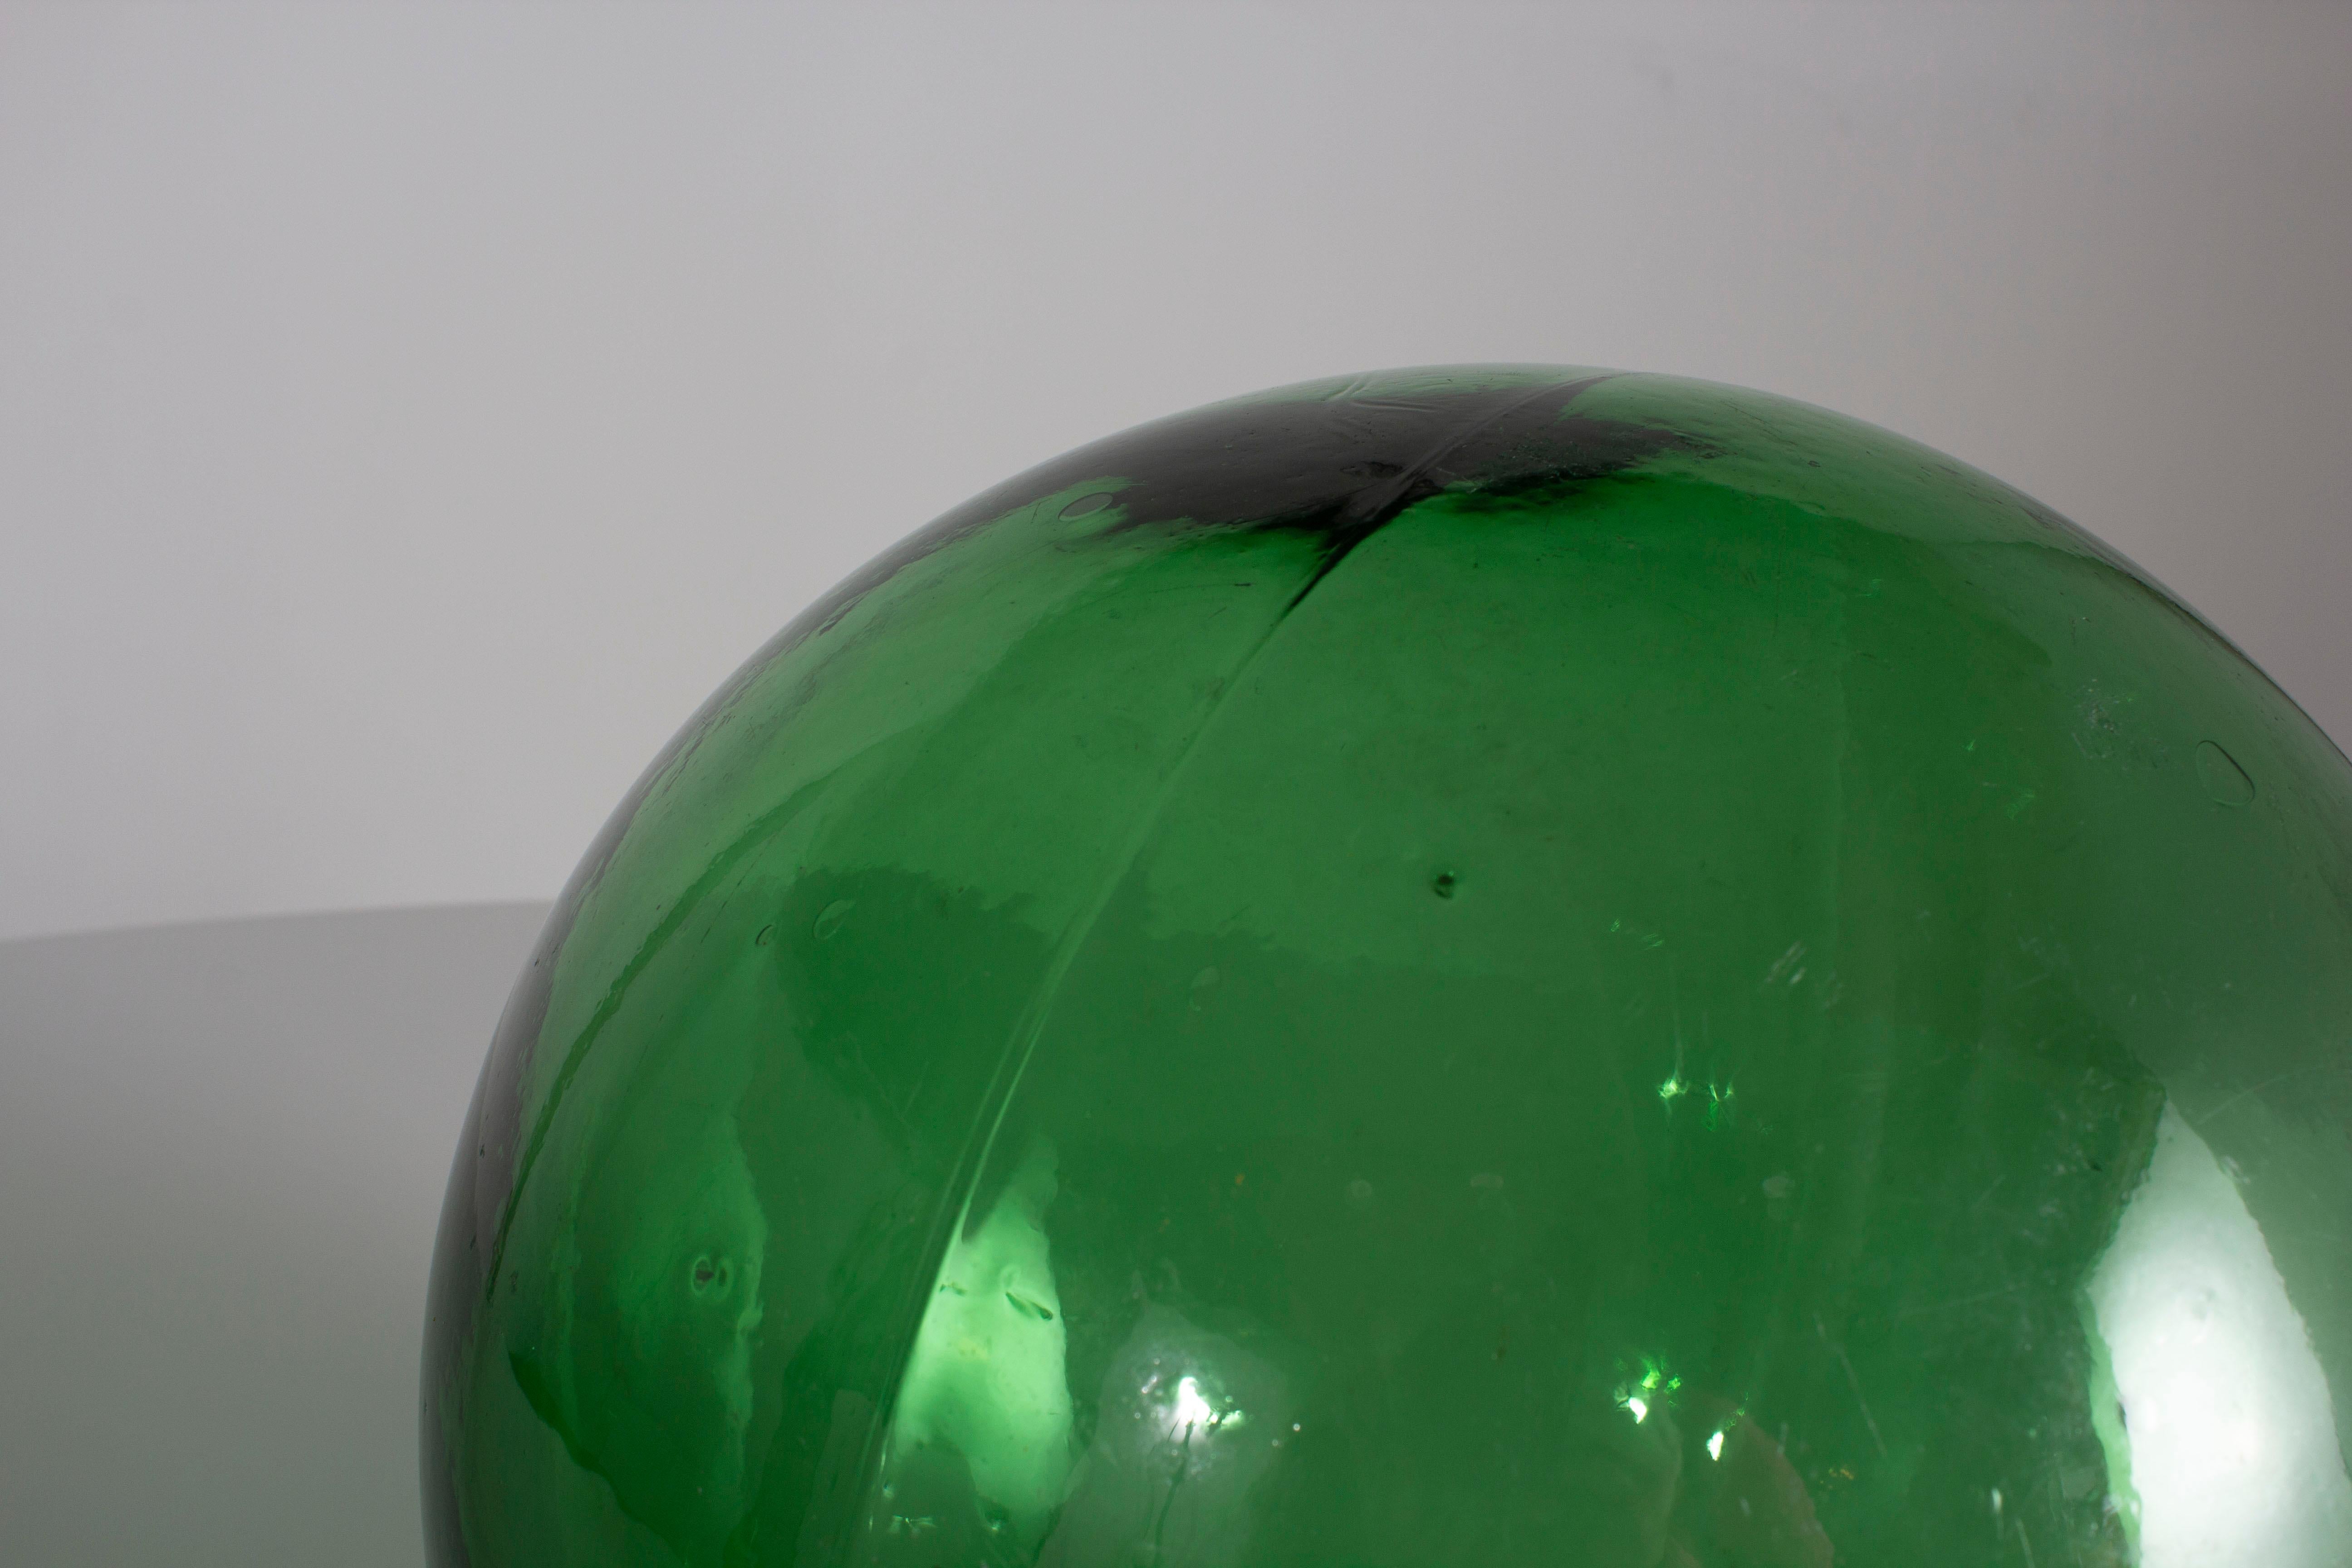 Decorative Green Orbe Decor In Excellent Condition For Sale In Dallas, TX